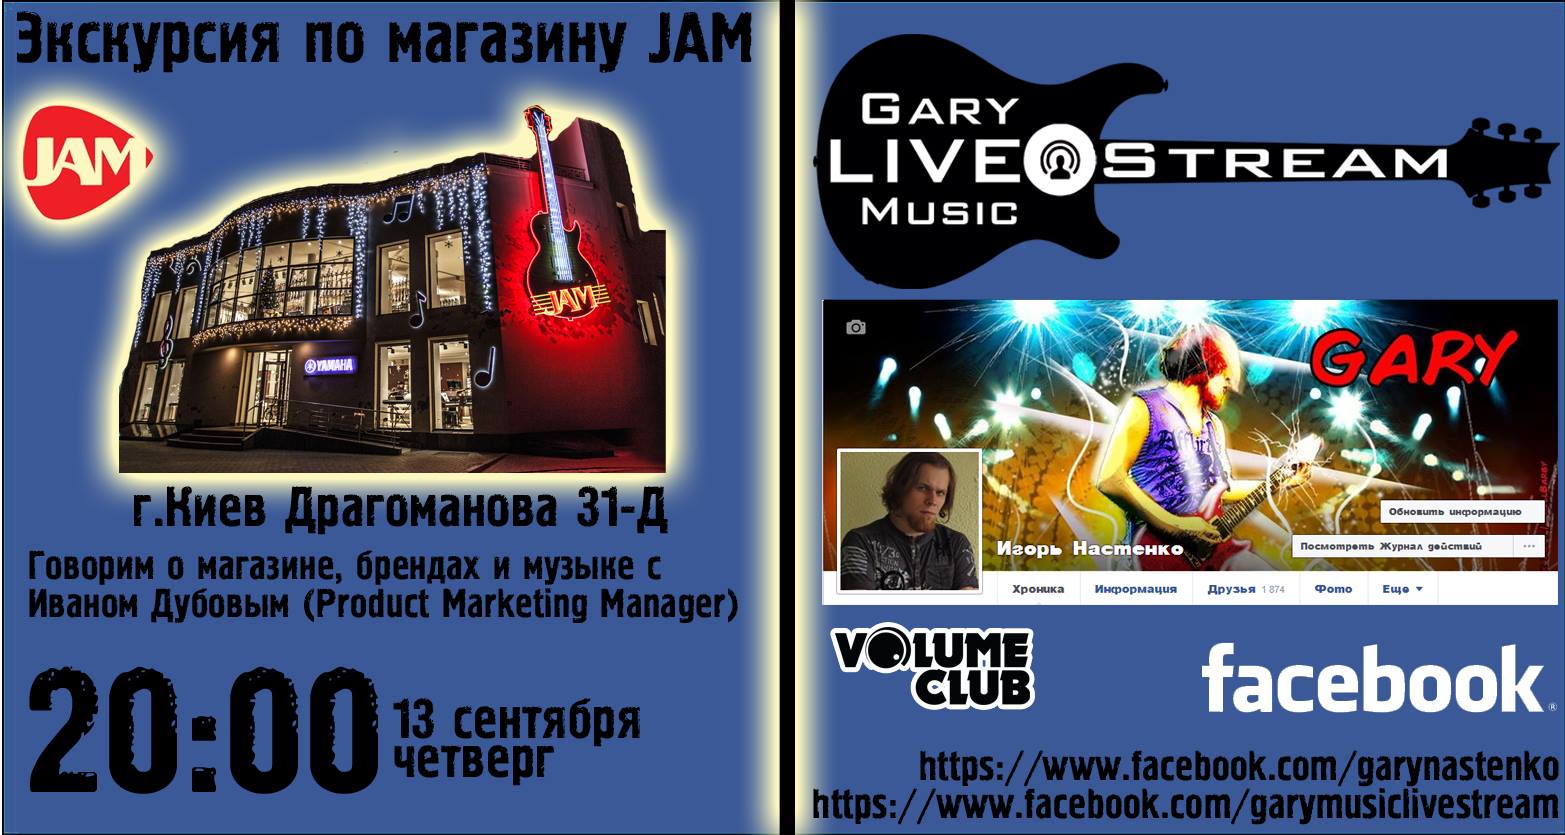 13 сентября 2018 20:00 live stream из магазина JAM музыкальные инструменты Драгоманова 31-д